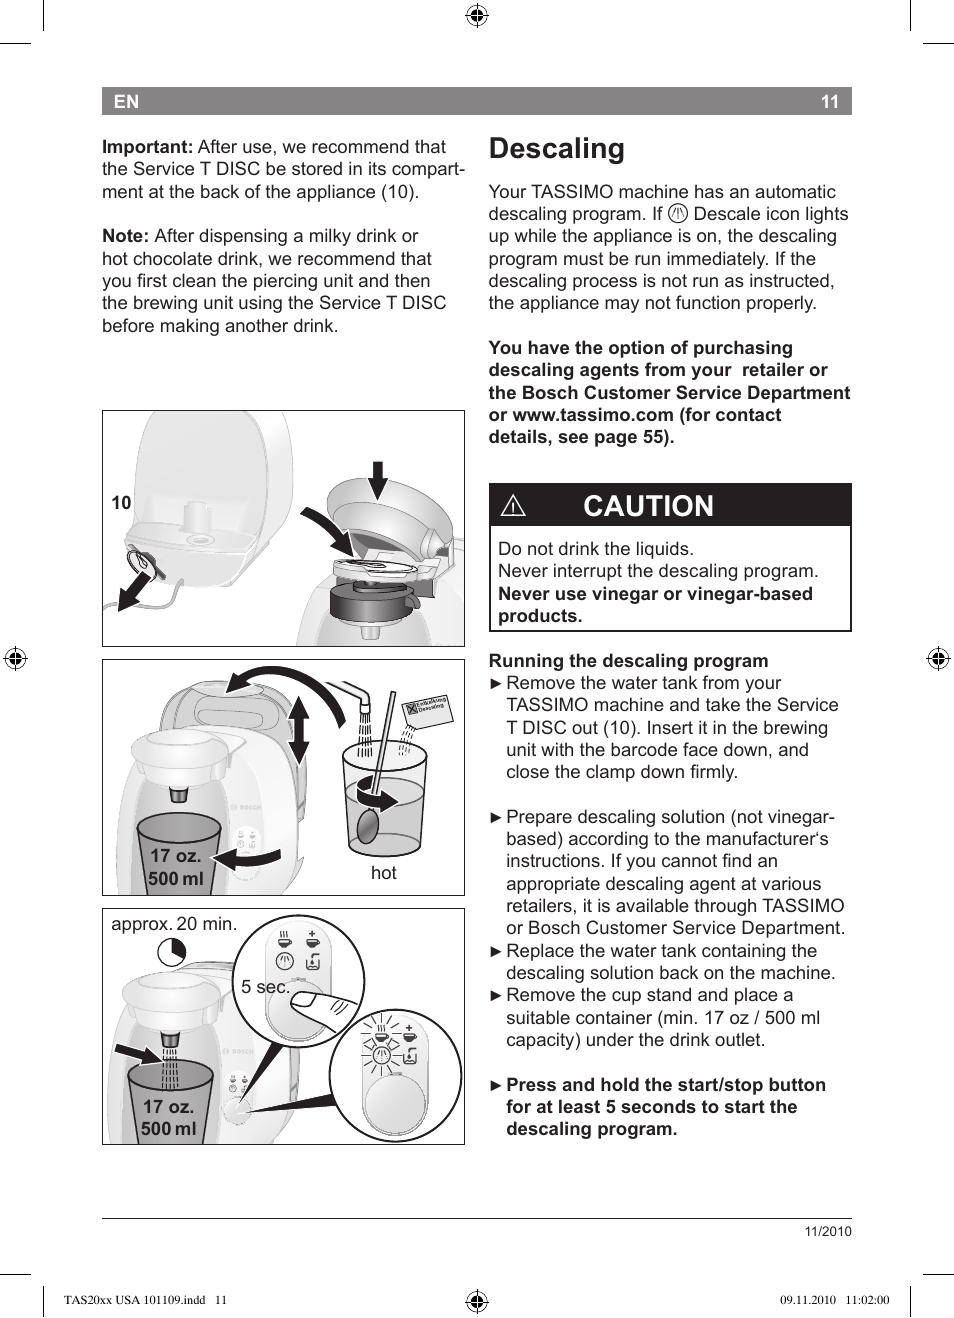 Descaling, Caution | Bosch TASSIMO T20 NOIR CAFE MULTIBOISSONS TAS2002 User  Manual | Page 13 / 58 | Original mode